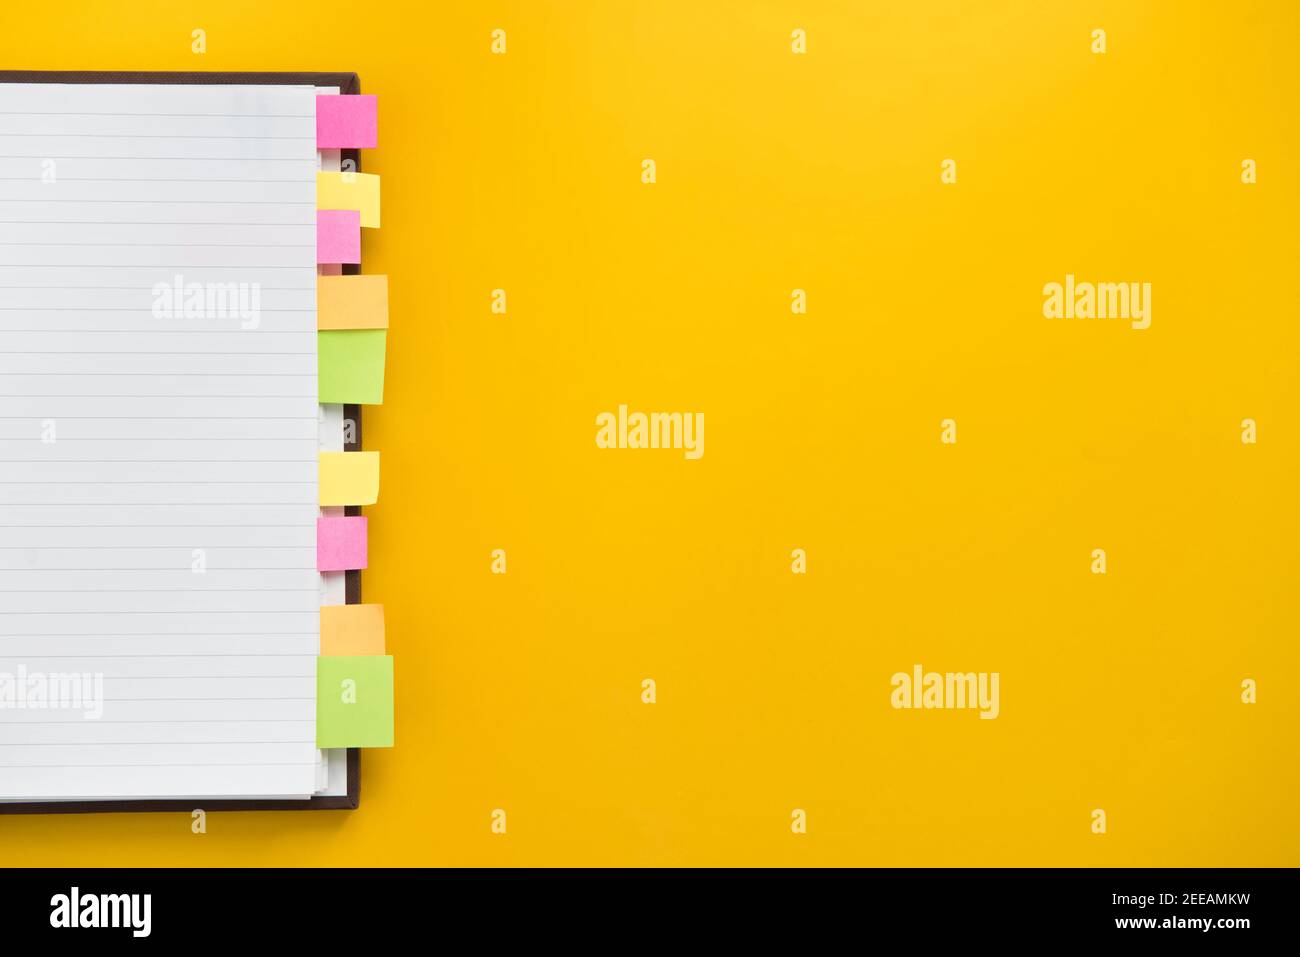 Apri un notebook vuoto con segnalibri adesivi colorati su carta gialla, design del bordo del concetto di sfondo educativo con spazio per la copia Foto Stock